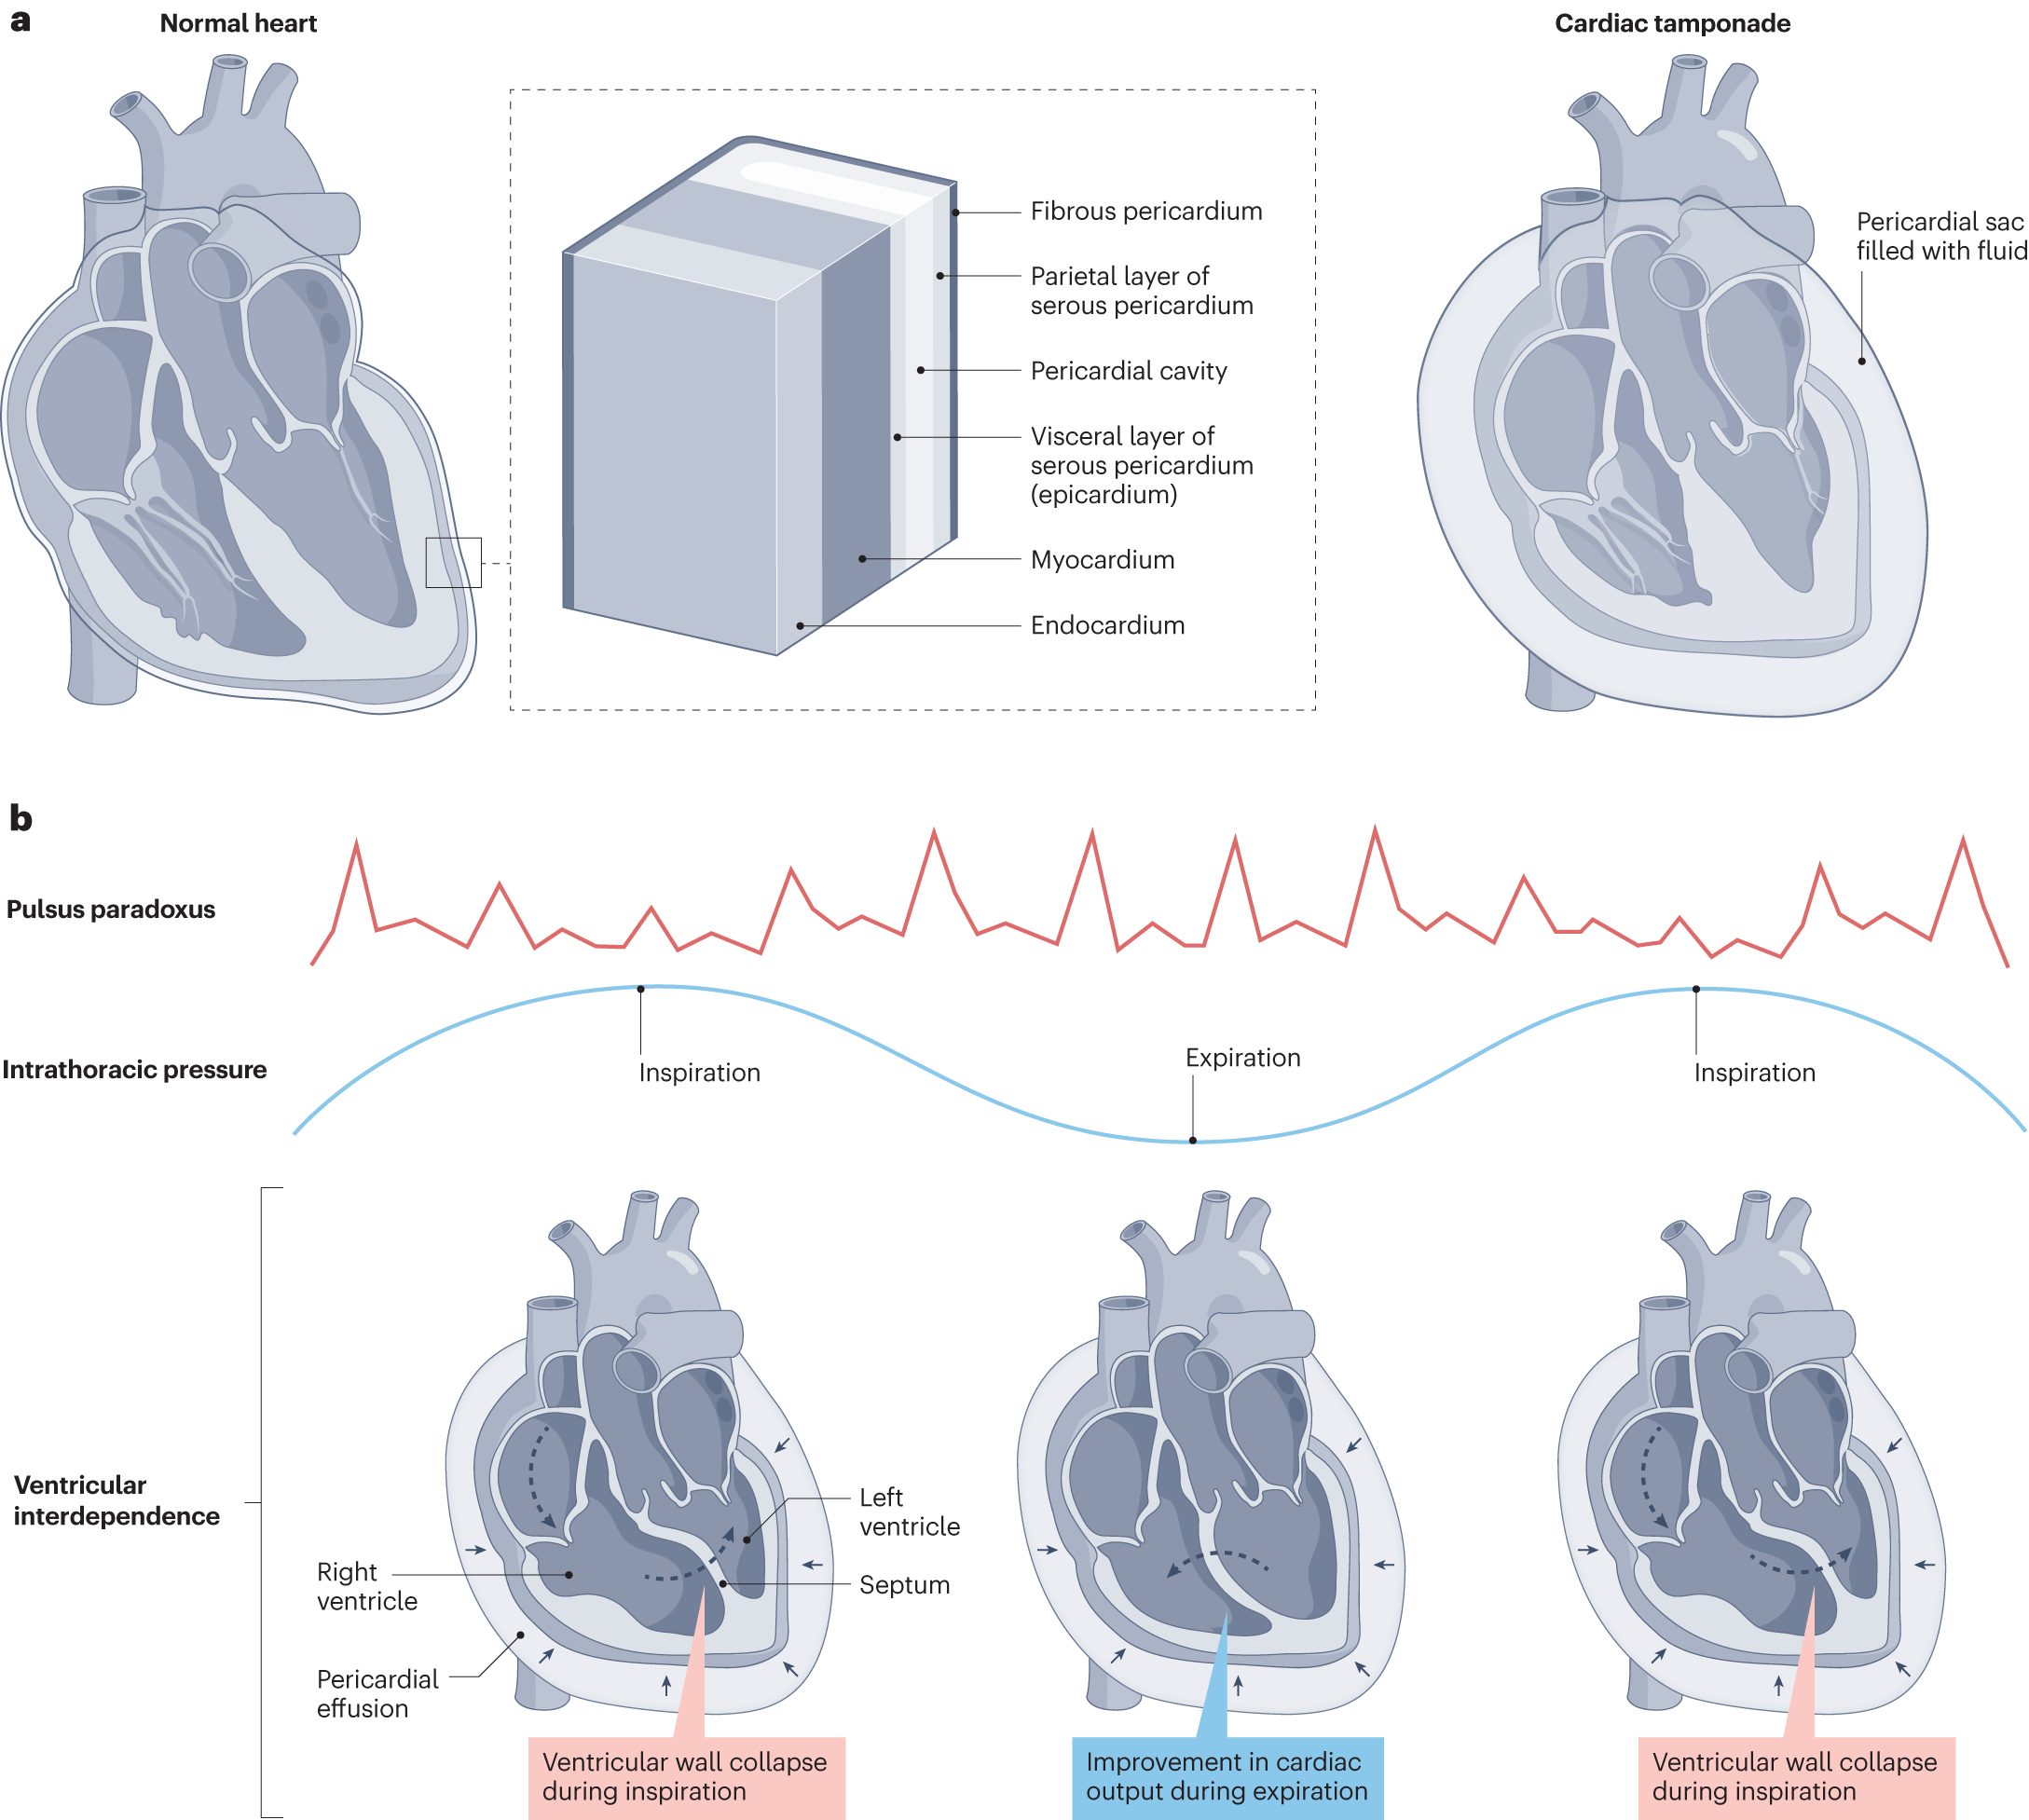 Cardiac tamponade | Nature Reviews Disease Primers